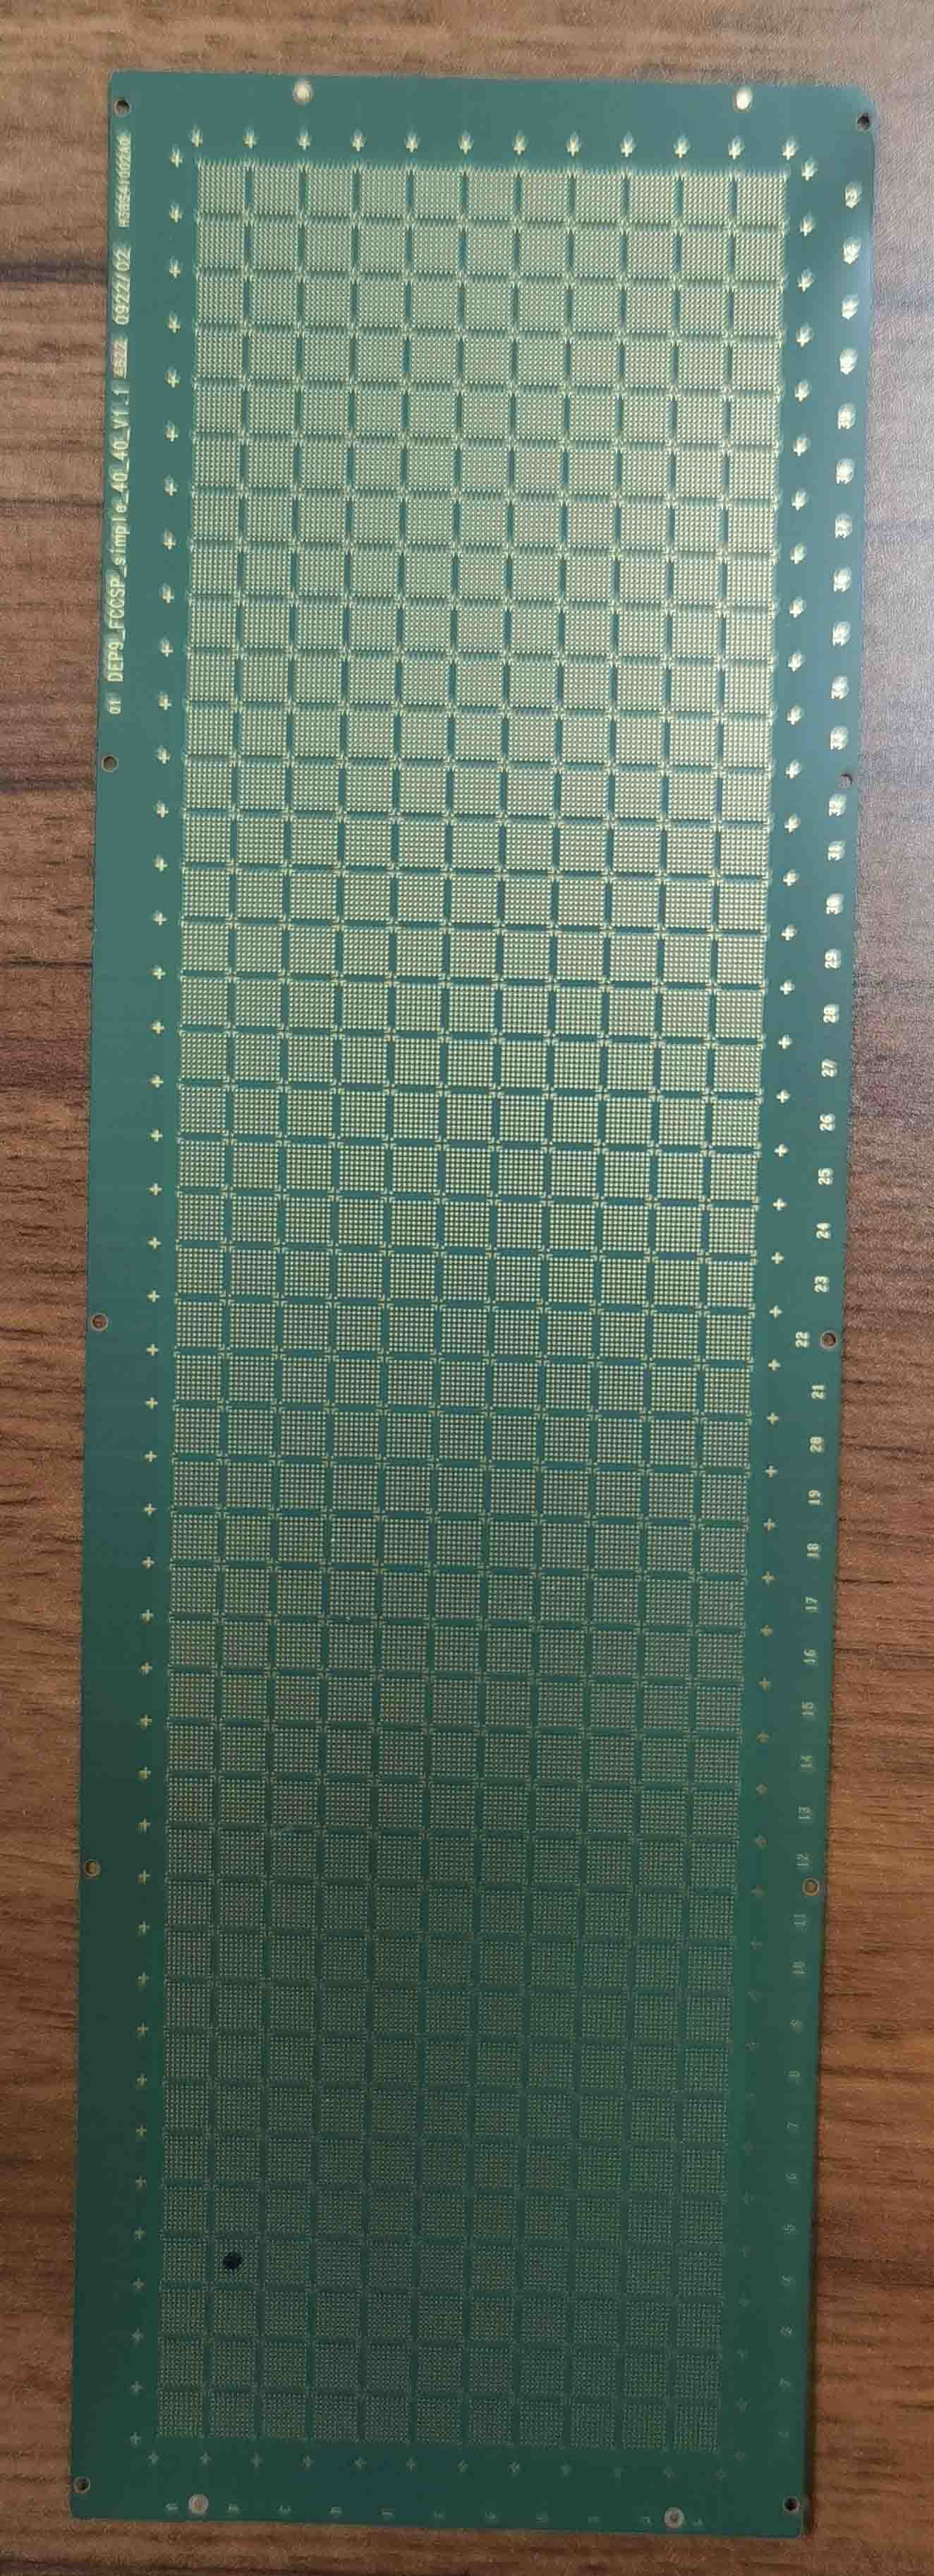 4层FCCSP封装类型芯片封装基板